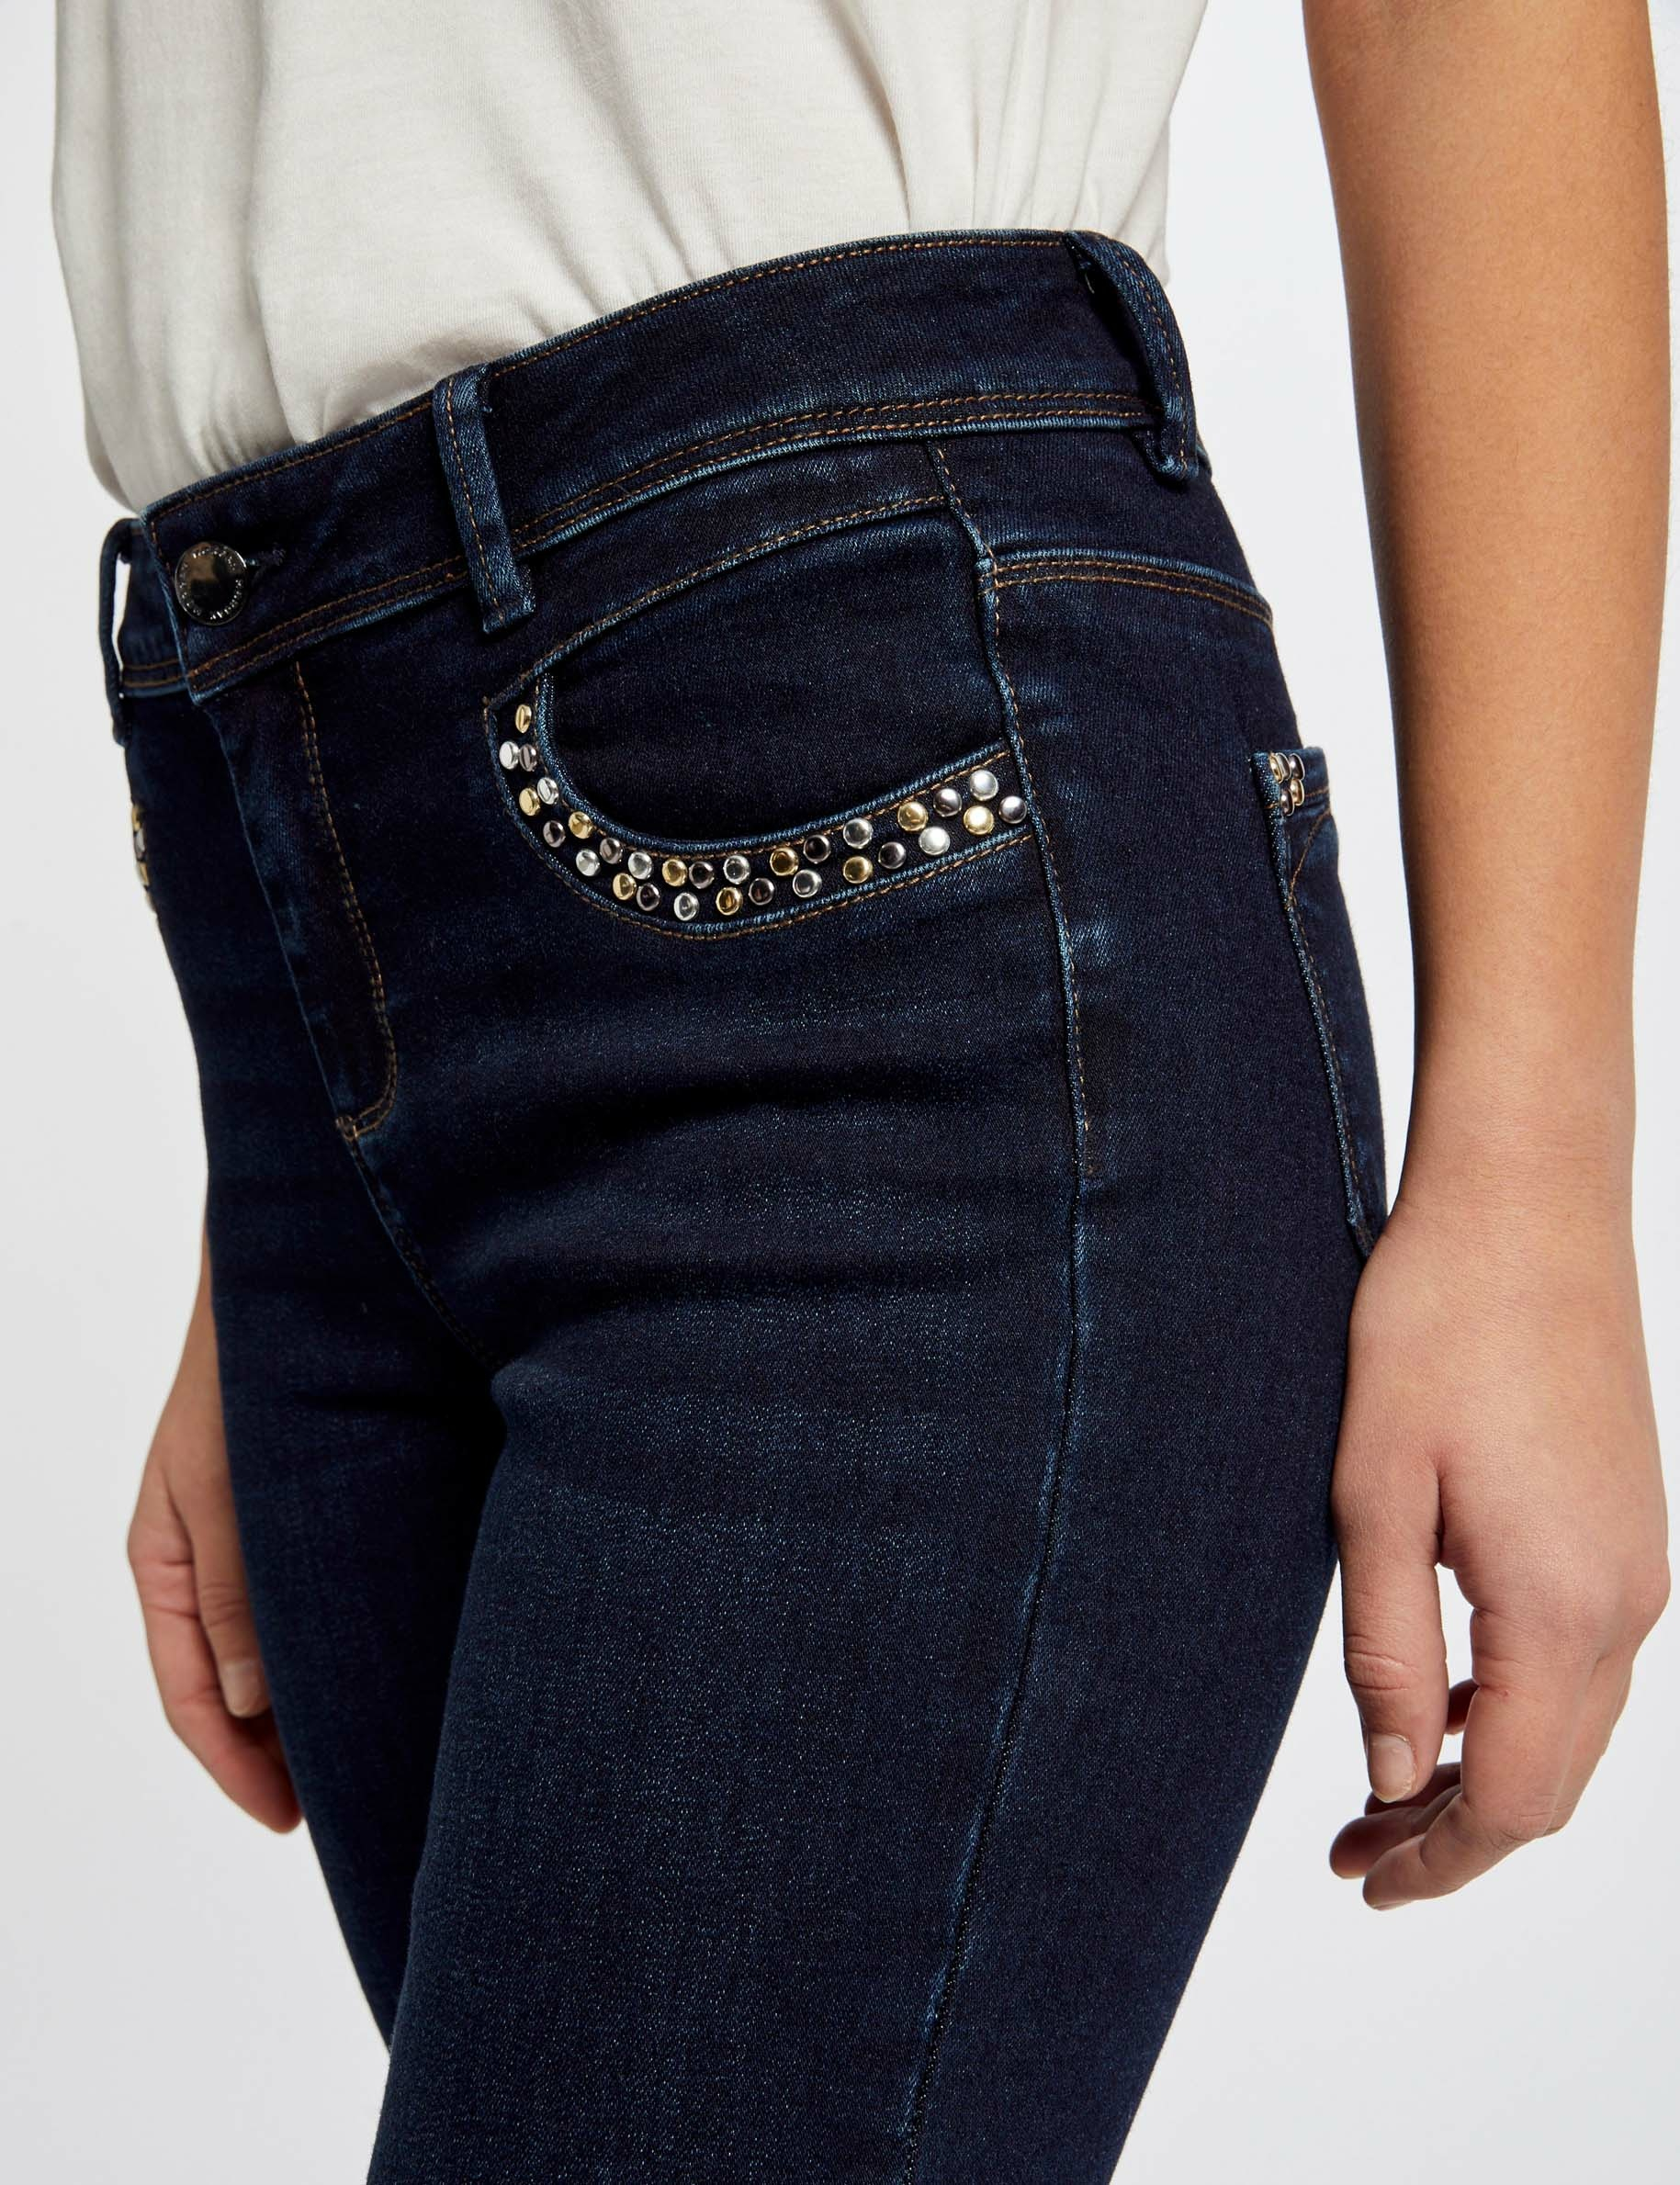 Slim jeans with studded pockets raw denim ladies'